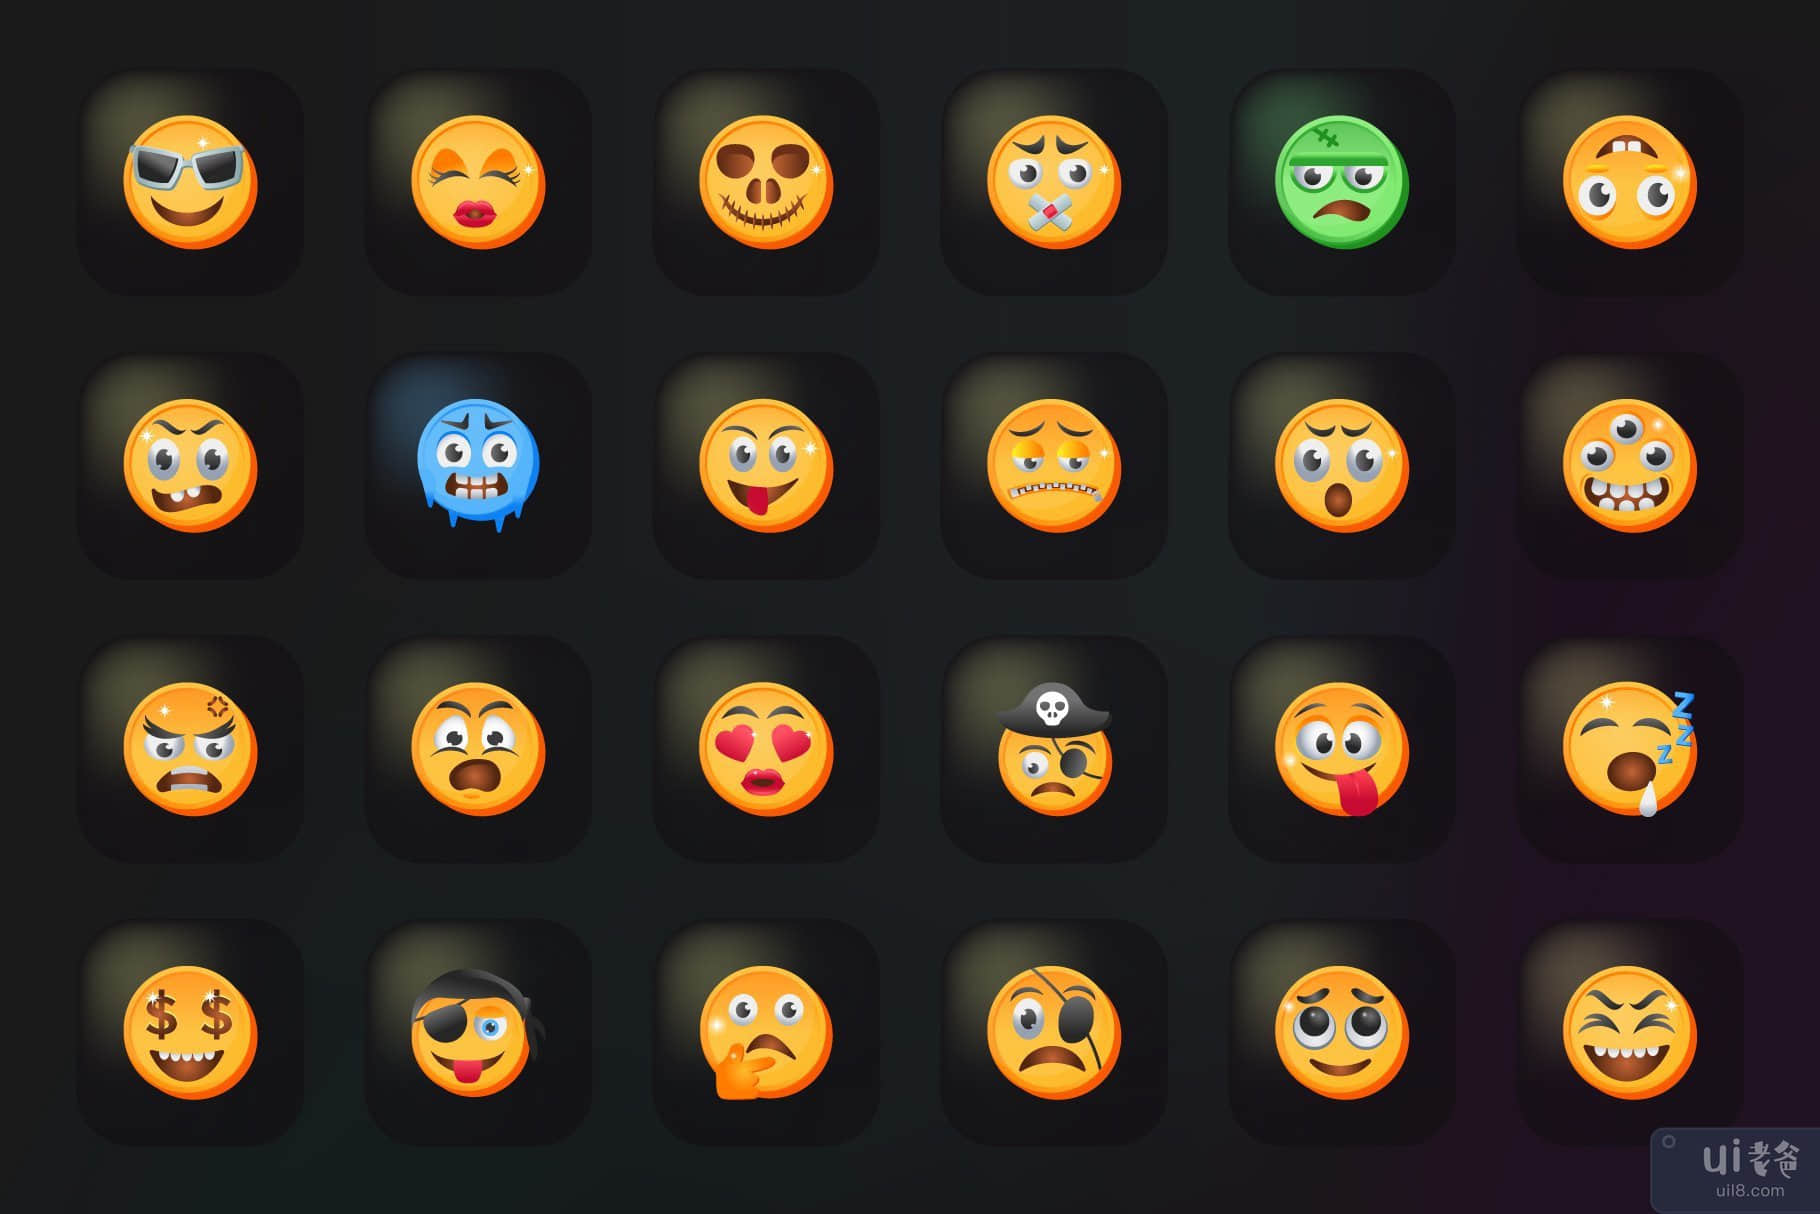 50 个表情符号图标-平面矢量(50 Emojis Icons - Flat Vectors)插图6